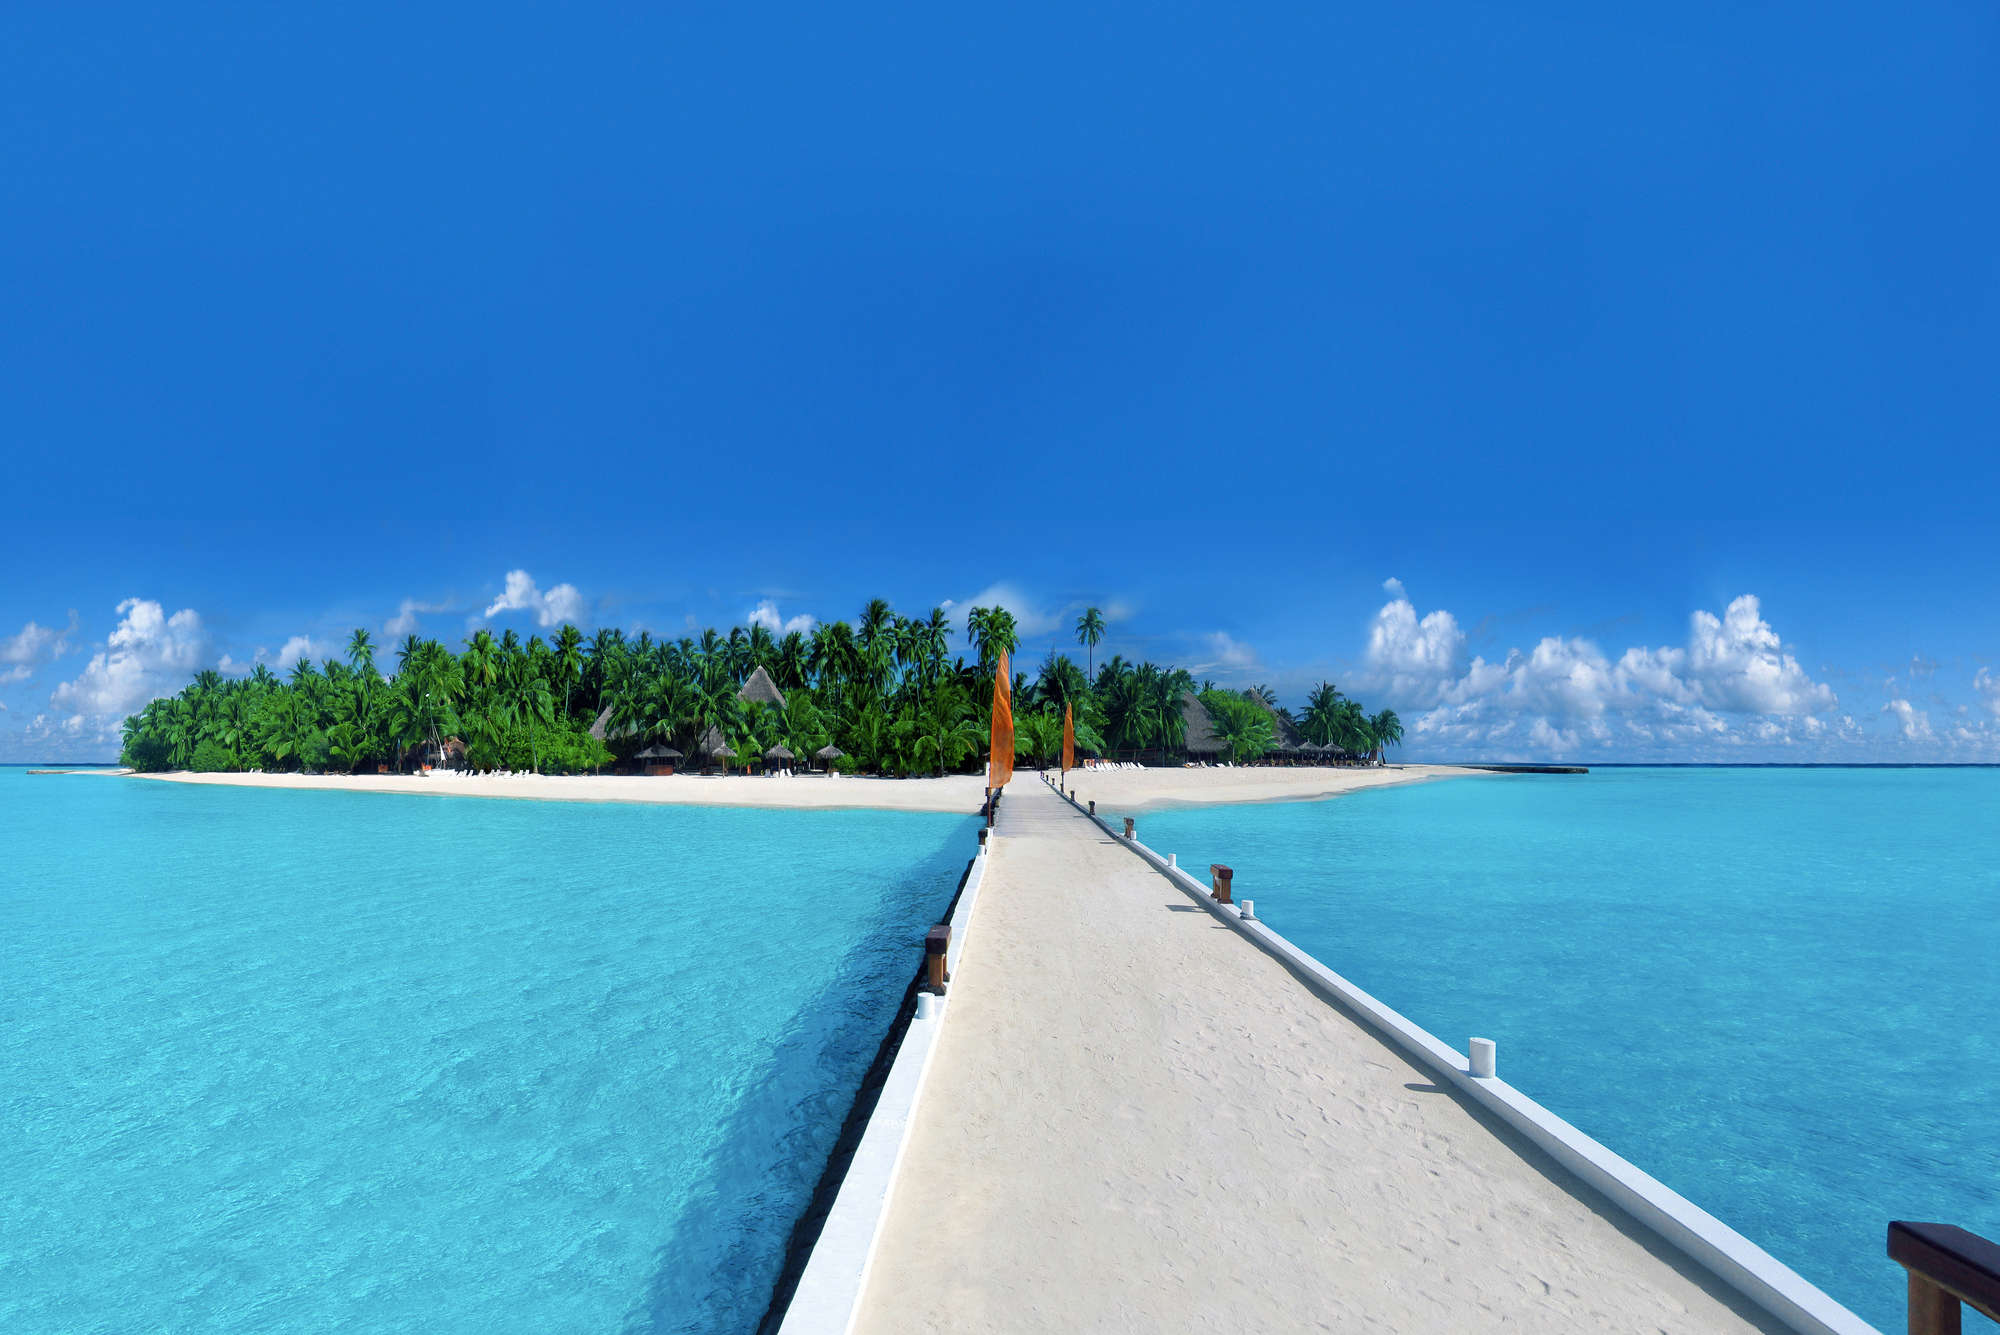             Fototapete Insel mit Steg zum Strand – Perlmutt Glattvlies
        